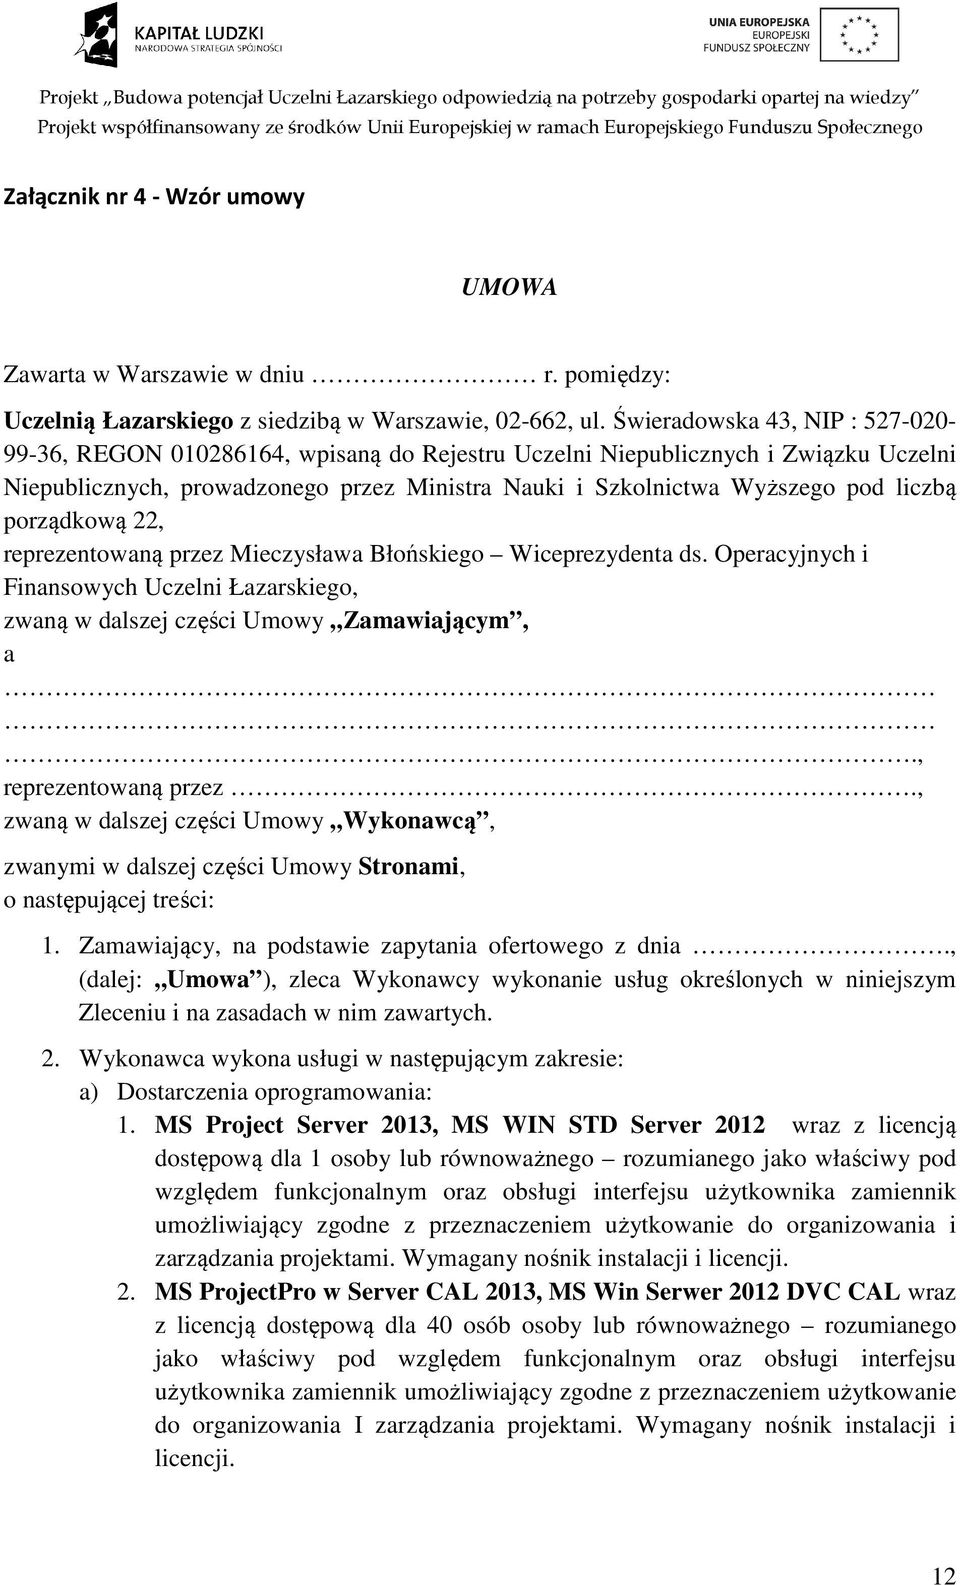 liczbą porządkową 22, reprezentowaną przez Mieczysława Błońskiego Wiceprezydenta ds. Operacyjnych i Finansowych Uczelni Łazarskiego, zwaną w dalszej części Umowy Zamawiającym, a.